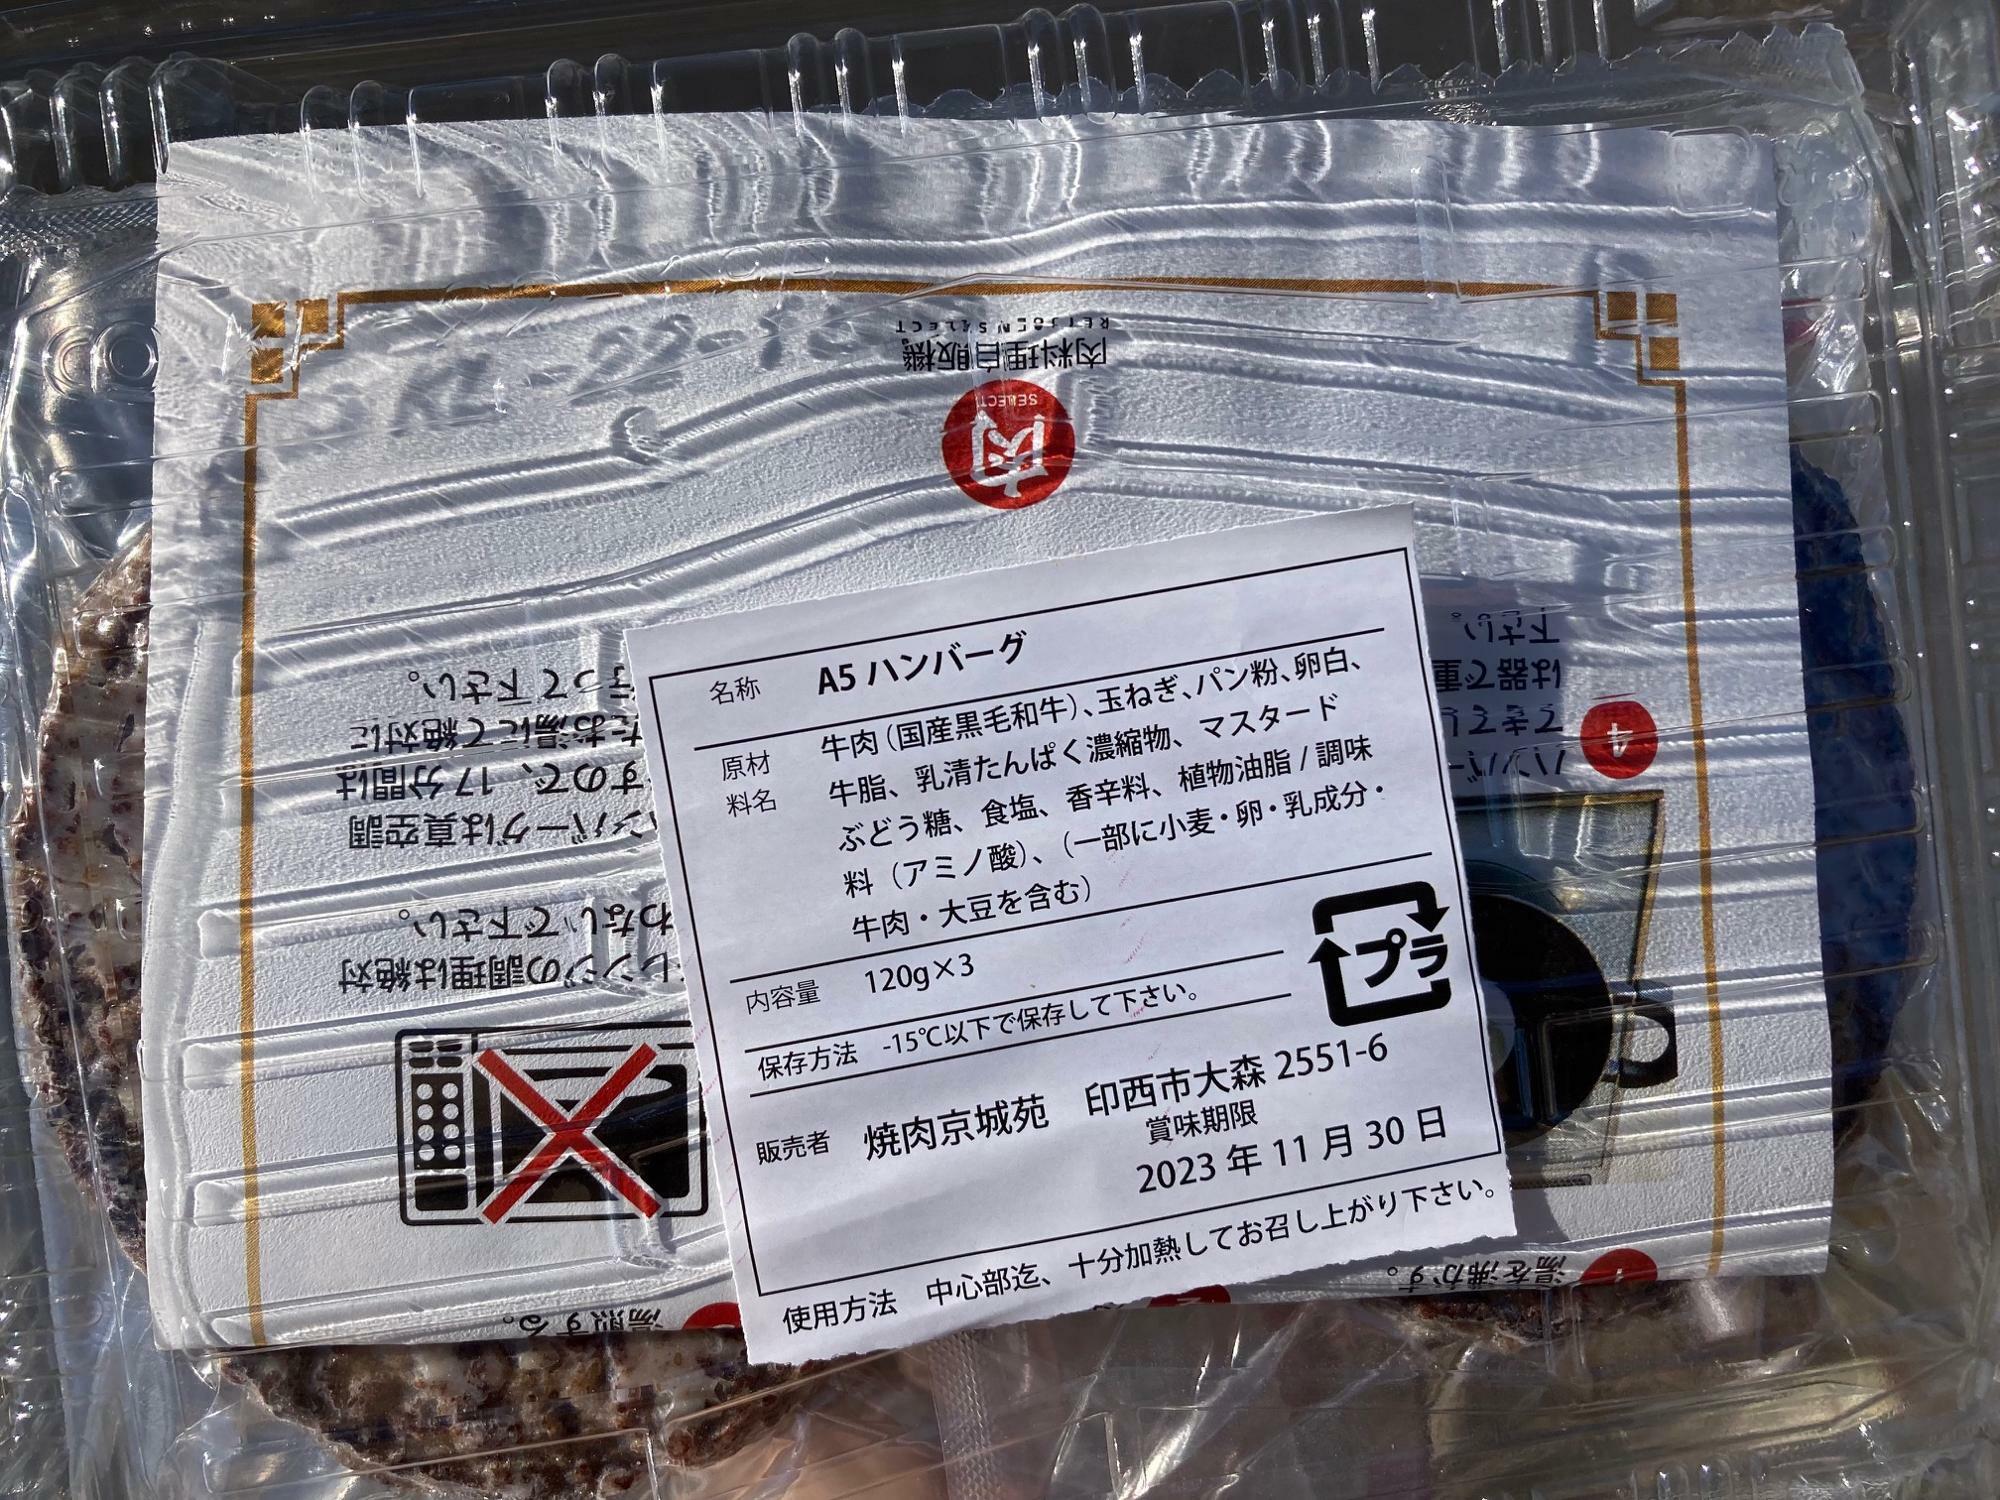 「焼肉 京城苑」の冷凍肉自動販売機で購入した「A5ハンバーグ」